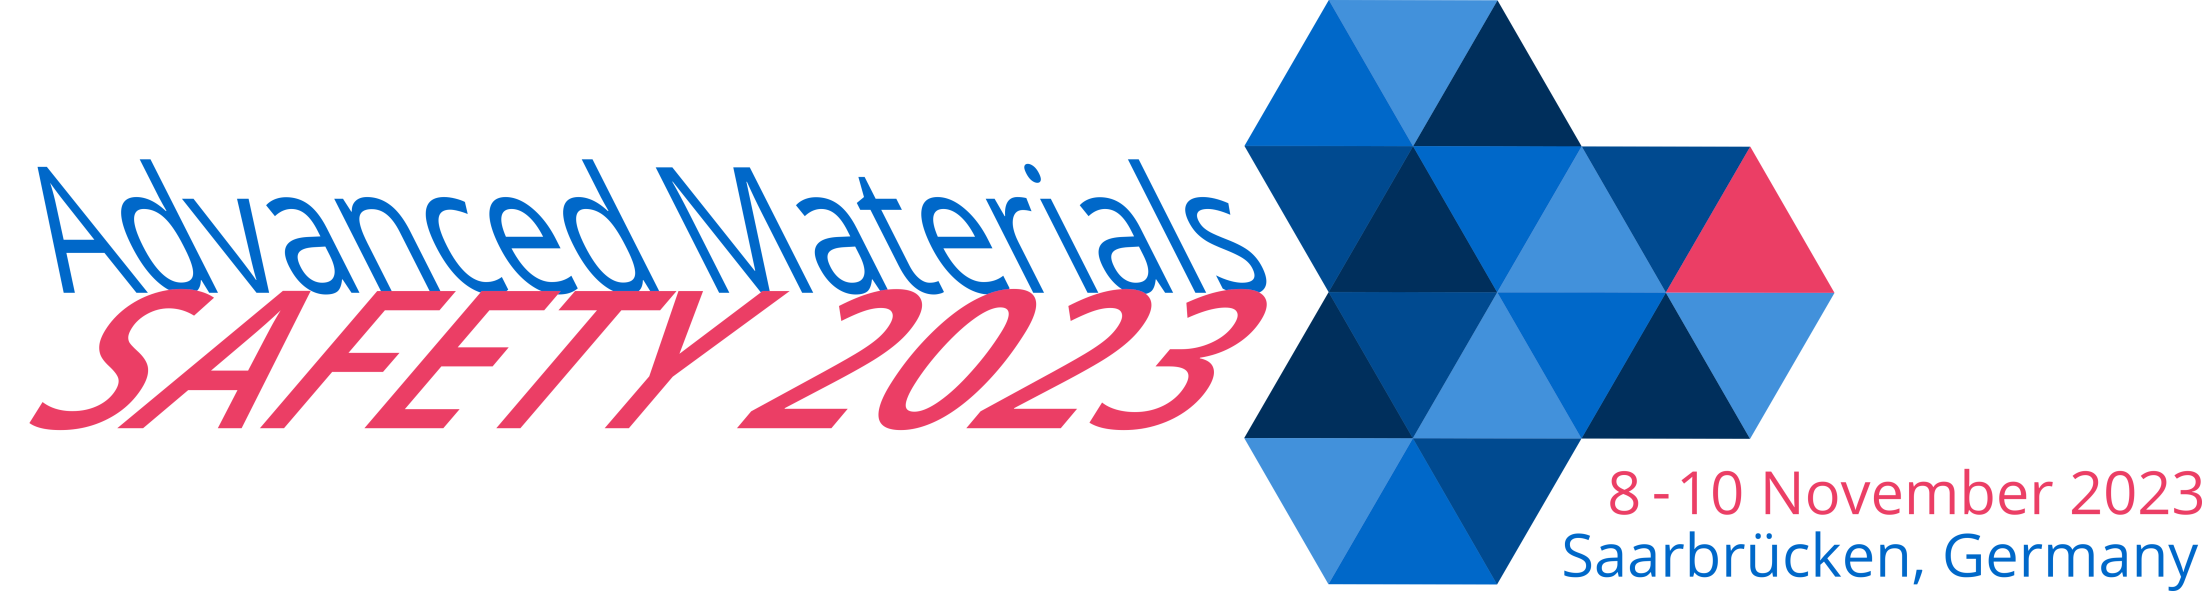 Konferenz »Advanced Materials Safety 2023« – Beitragseinreichung geöffnet